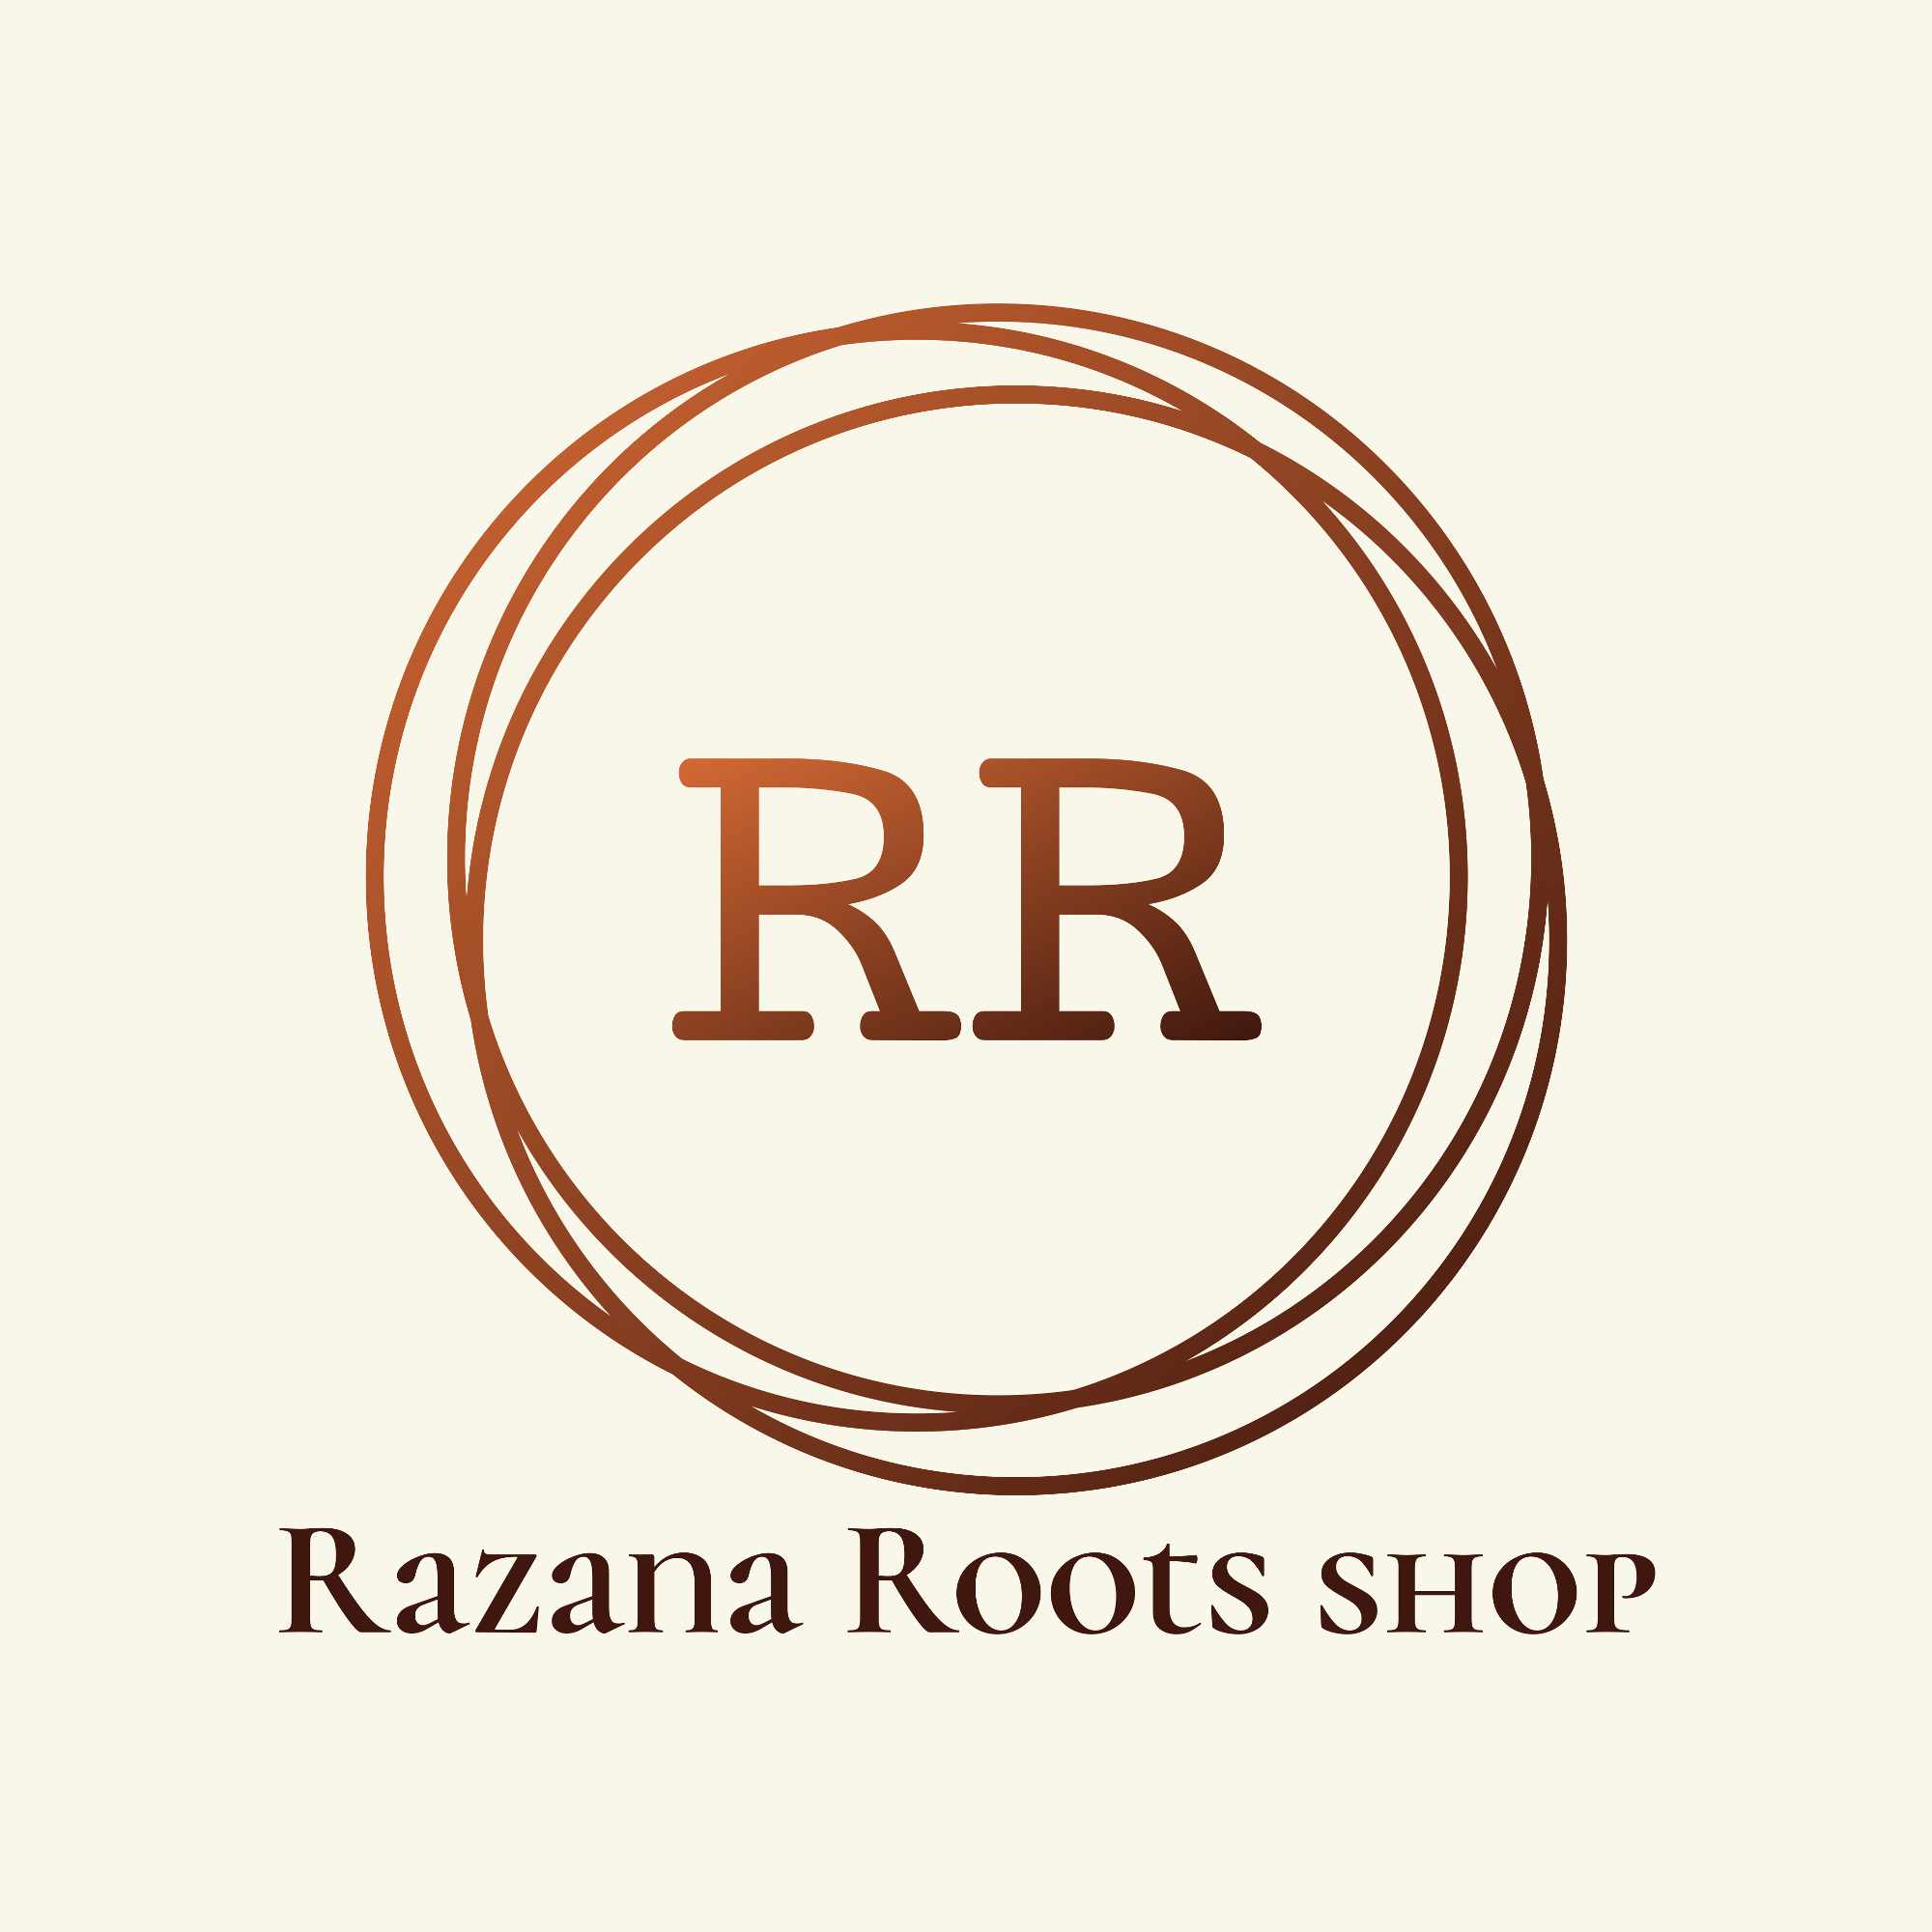 Razana roots shop